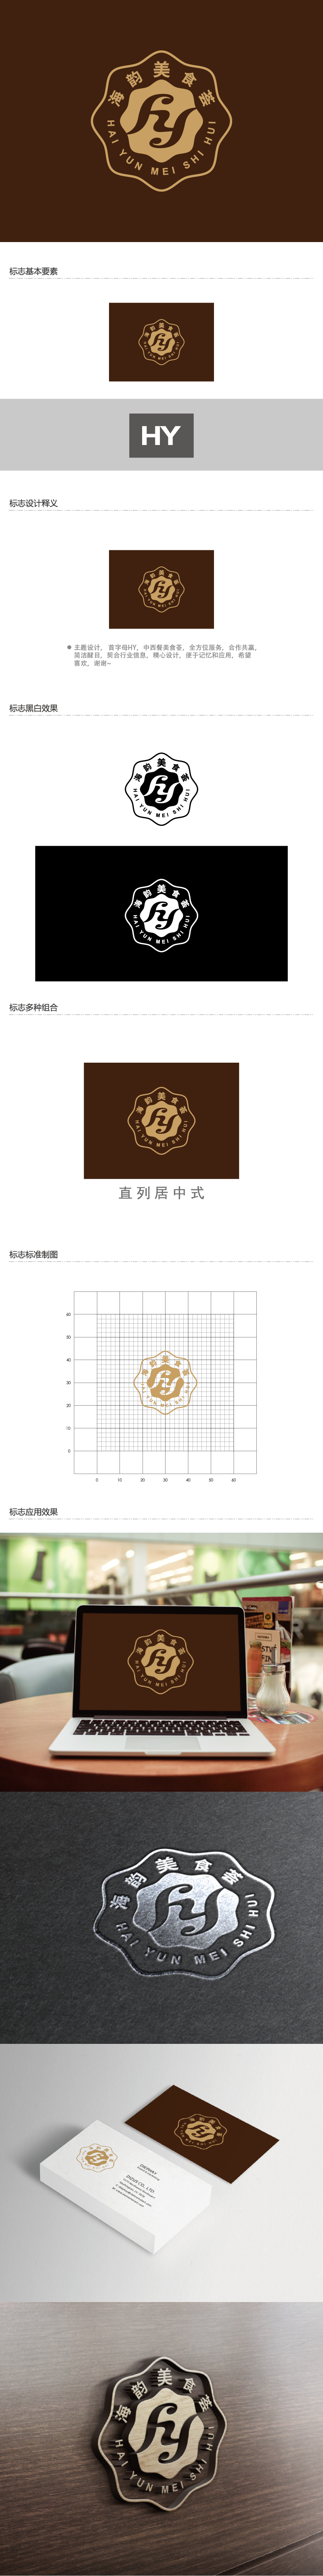 王涛的海韵美食荟logo设计